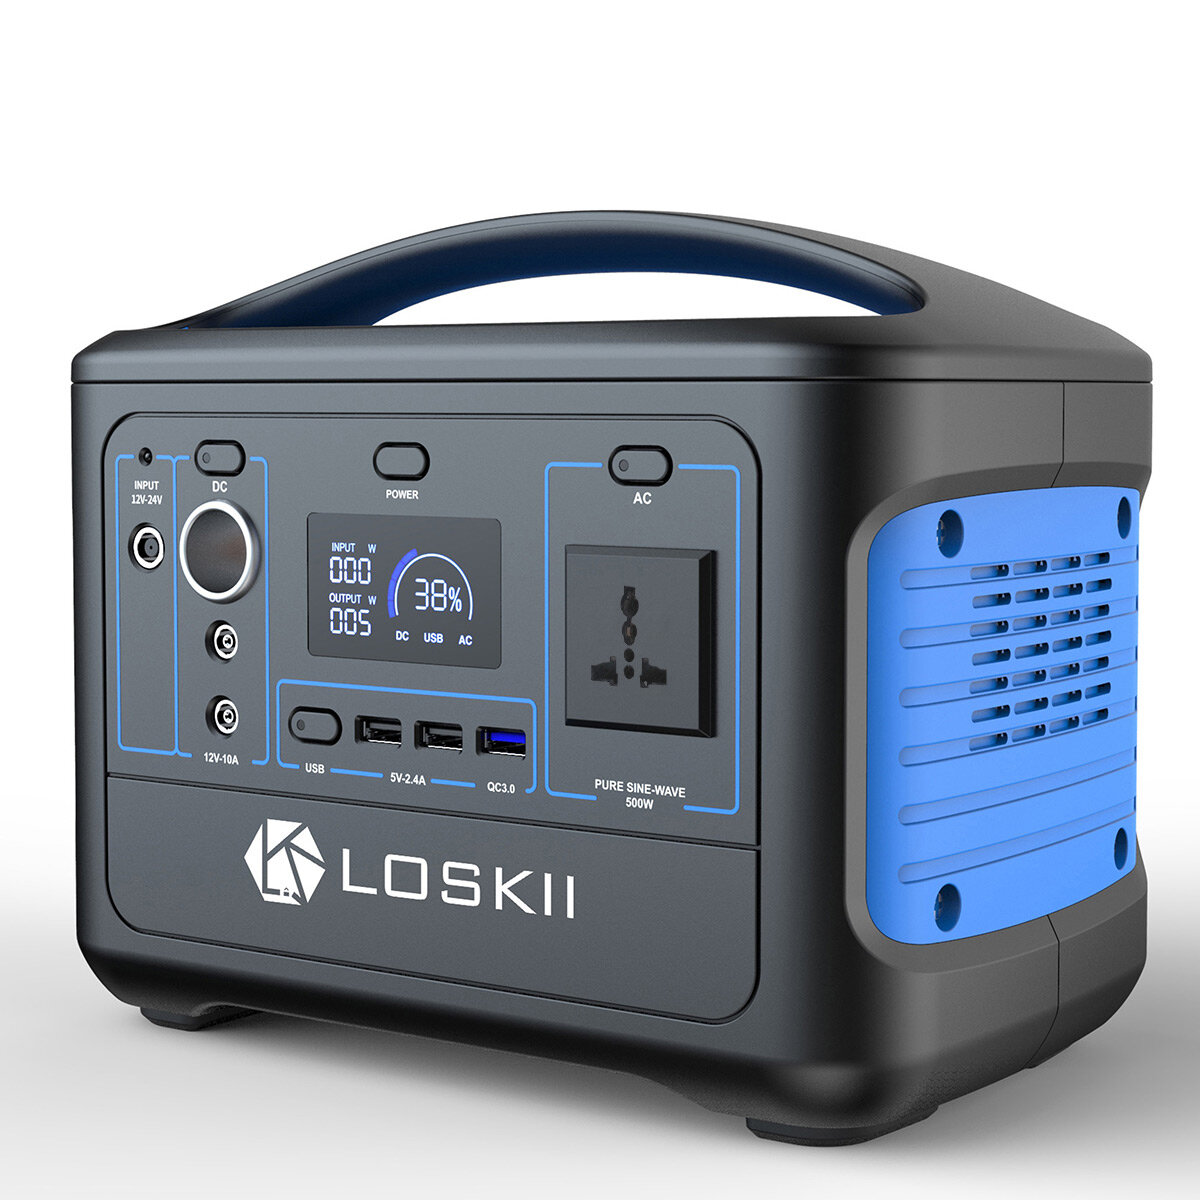 Loskii LK-PS10 Centrale elettrica esterna portatile Batteria Generatore 220-230V 568Wh/153600mAh campeggio solare Generatore Alimentazione di emergenza LCD Display per esterno campeggio